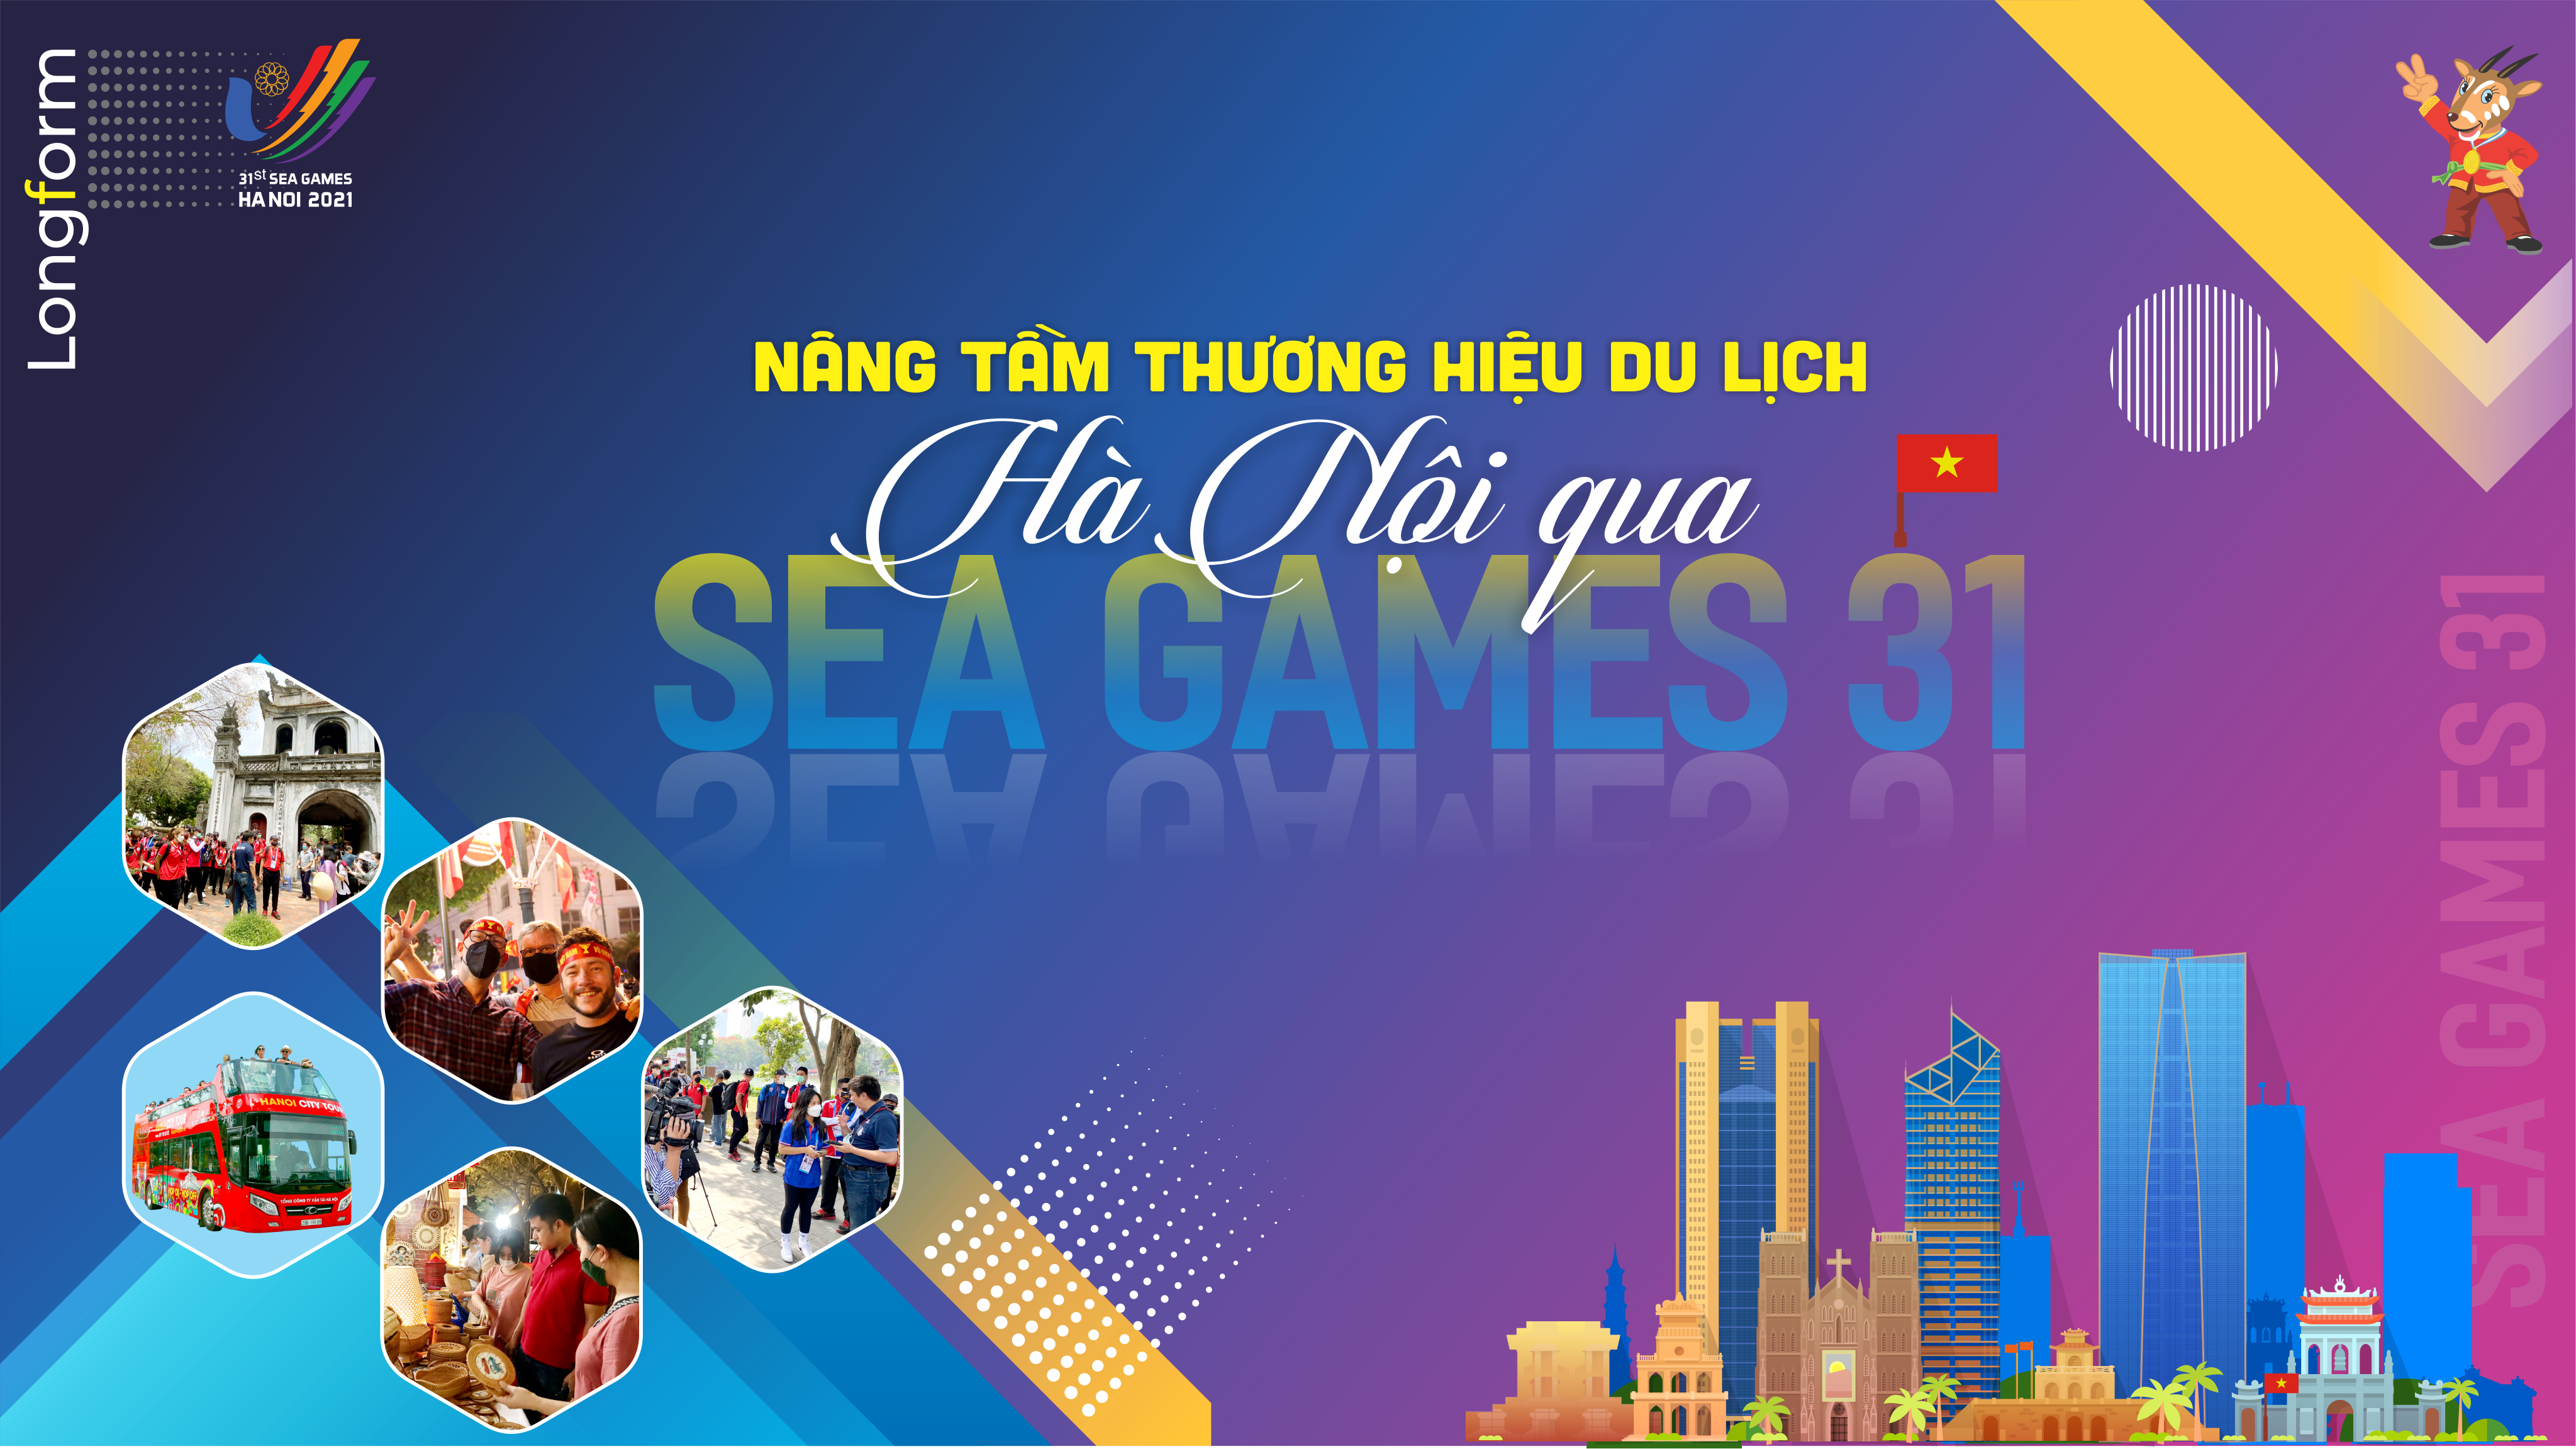 Nâng tầm thương hiệu du lịch Hà Nội qua SEA Games 31